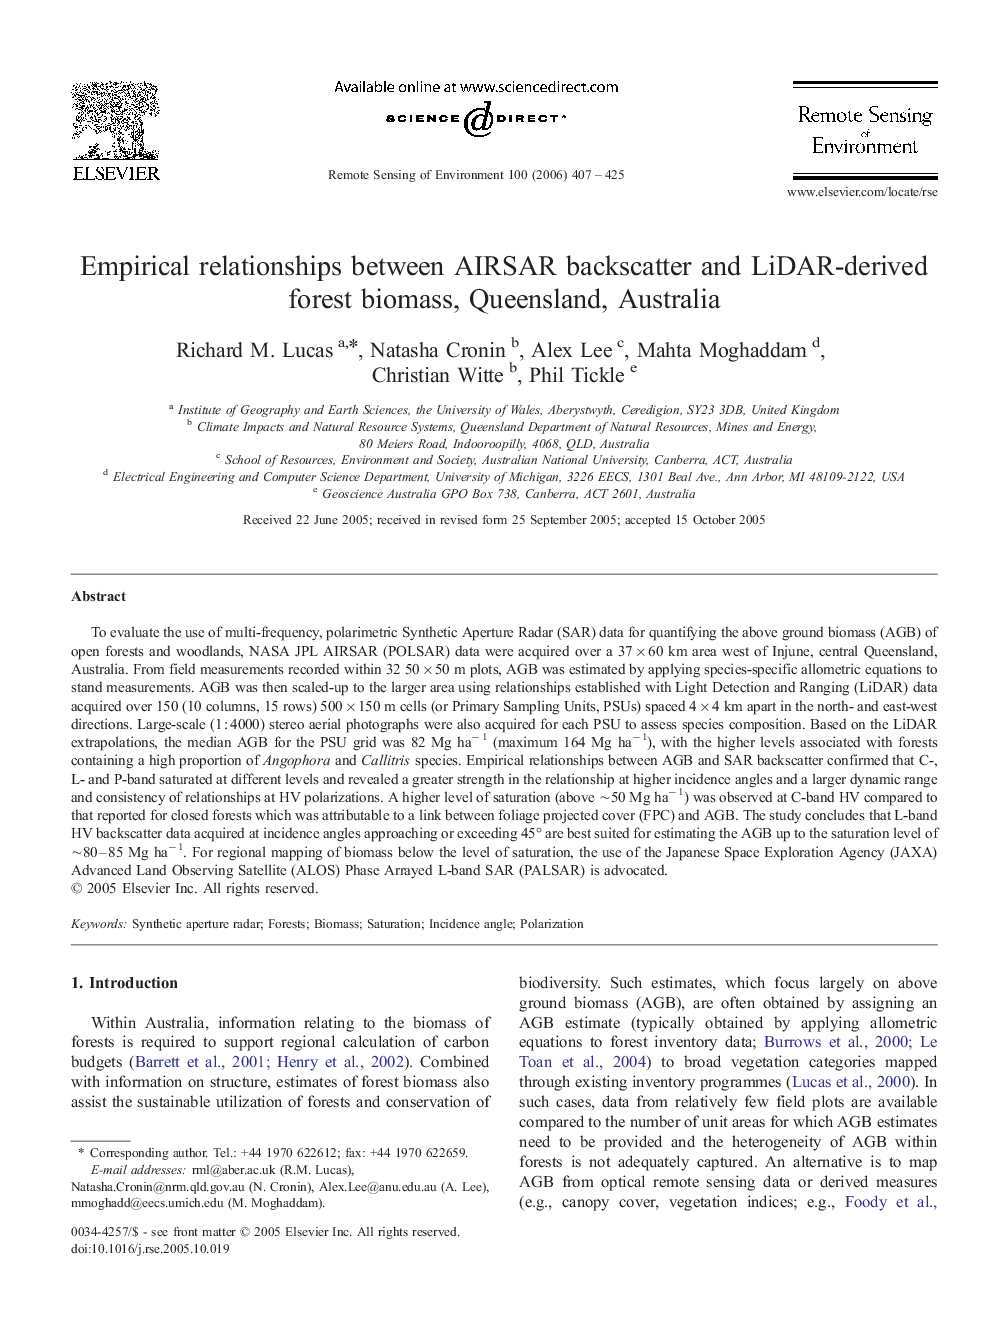 Empirical relationships between AIRSAR backscatter and LiDAR-derived forest biomass, Queensland, Australia